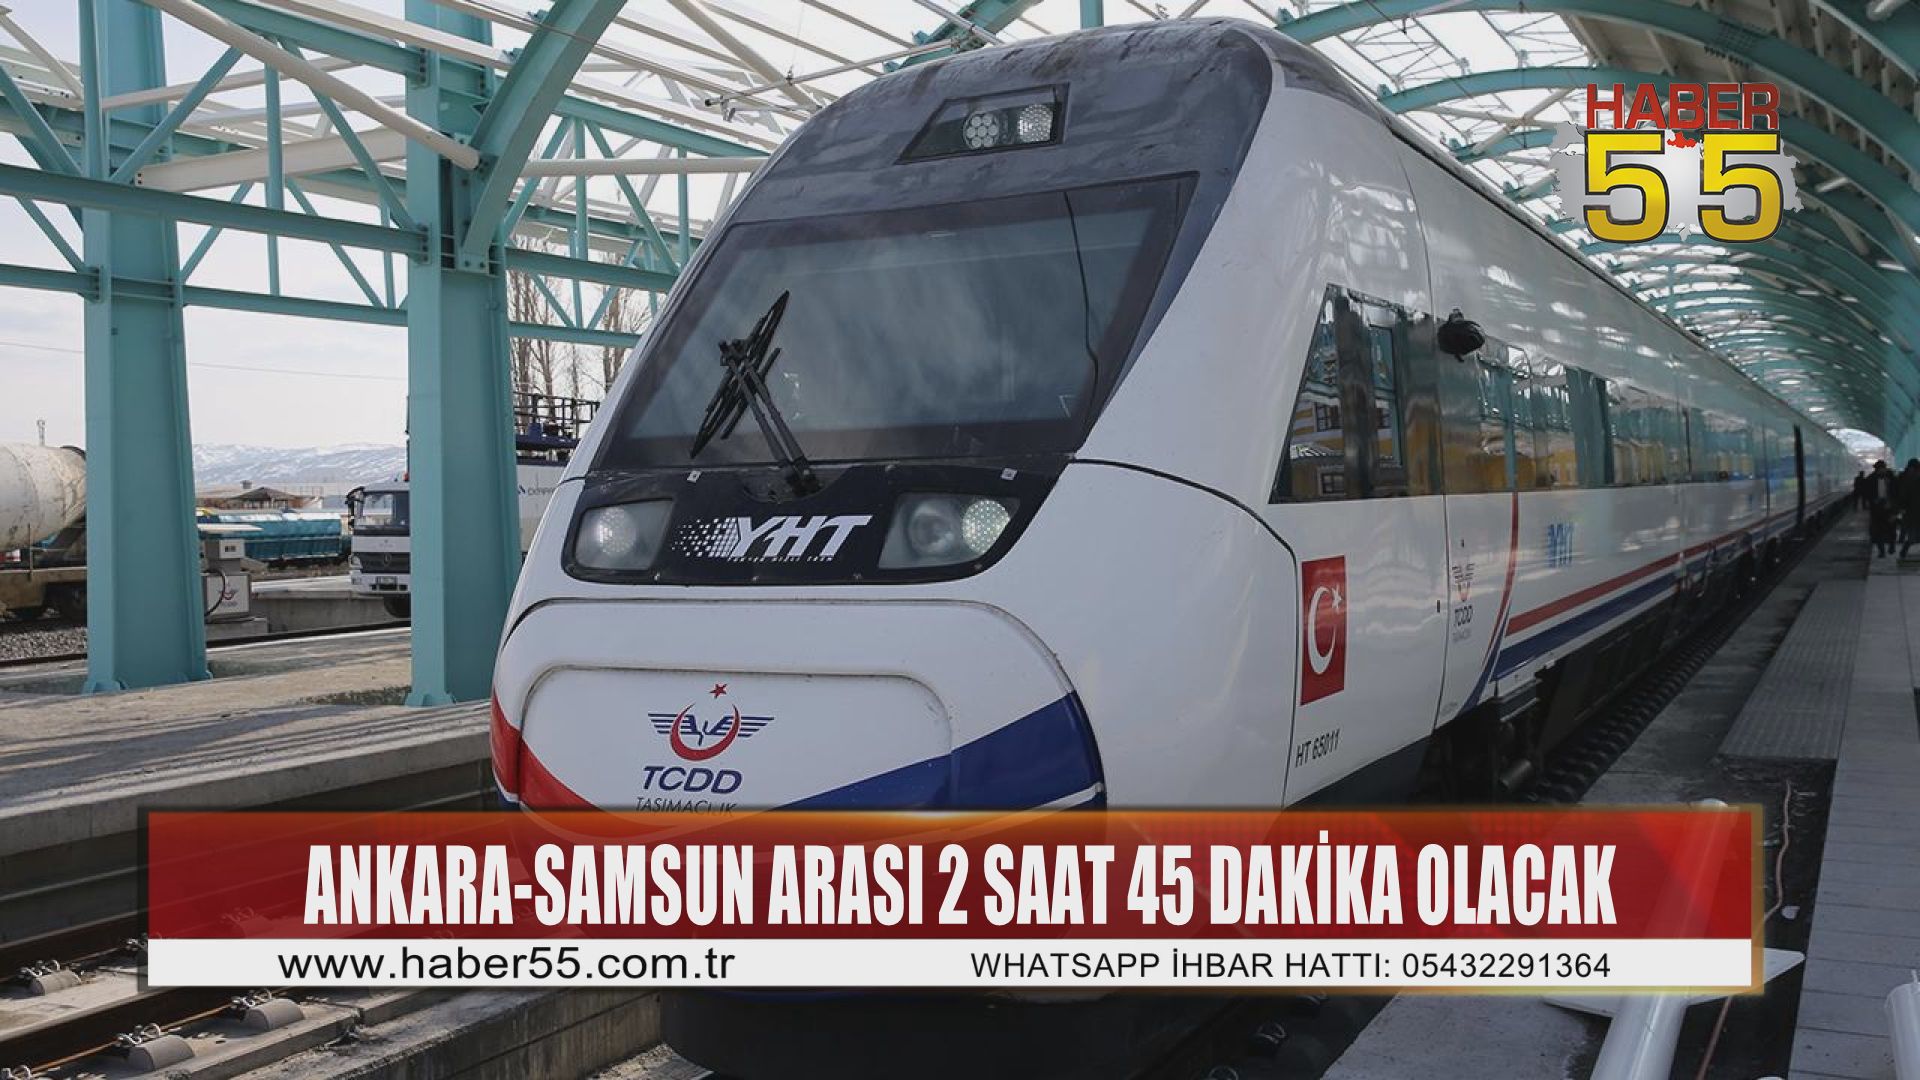 Hızlı tren ile Ankara-Samsun arası 2 saat 45 dakika olacak